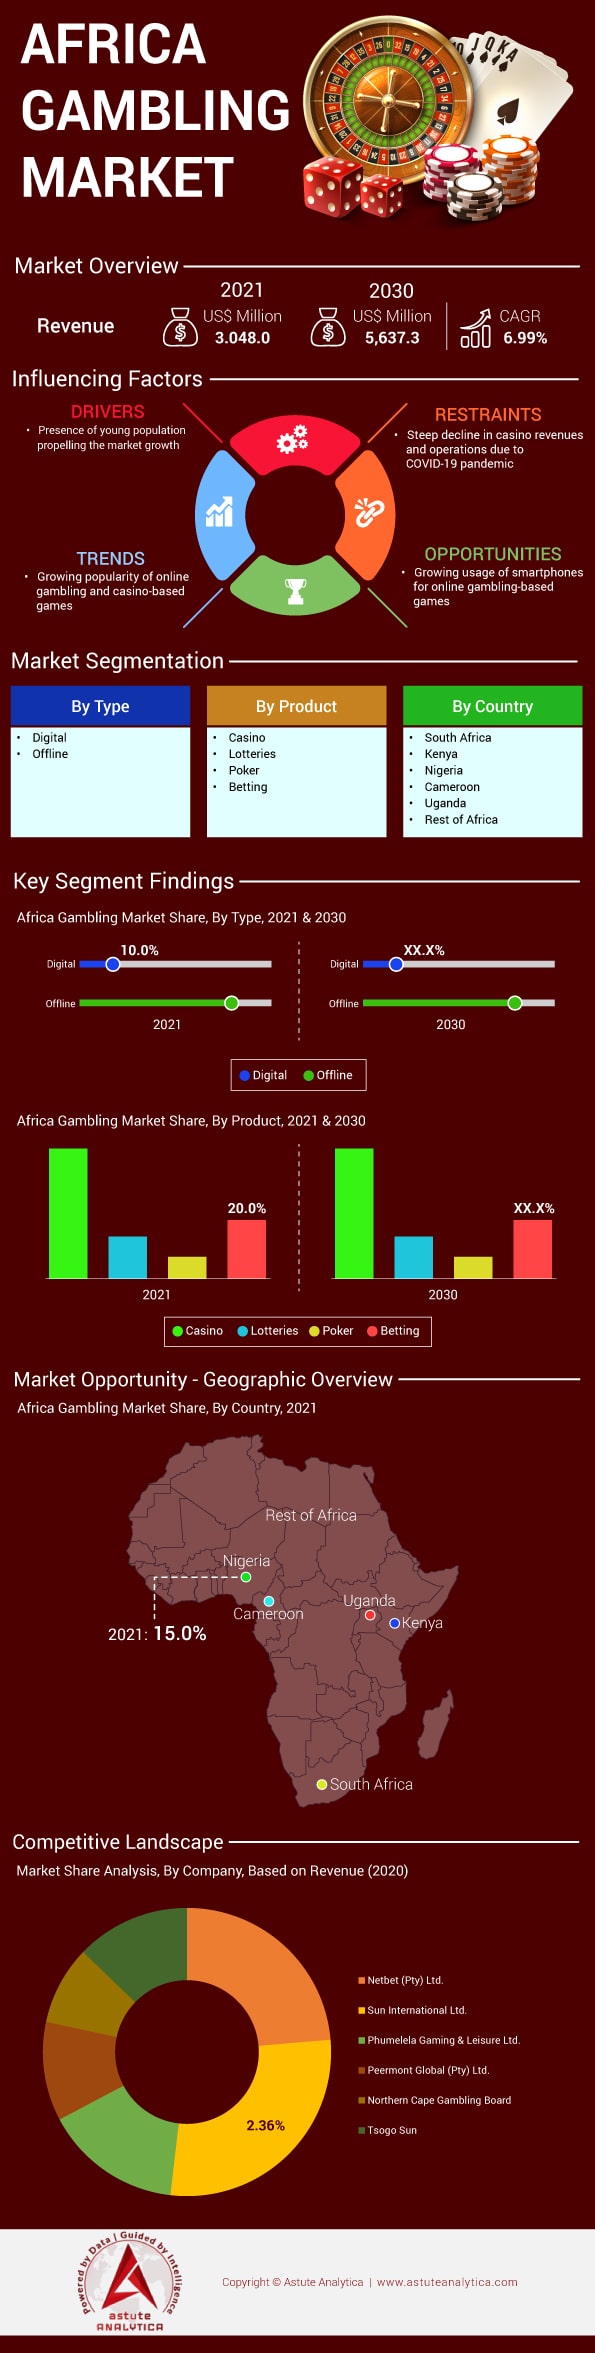 Africa Gambling Market